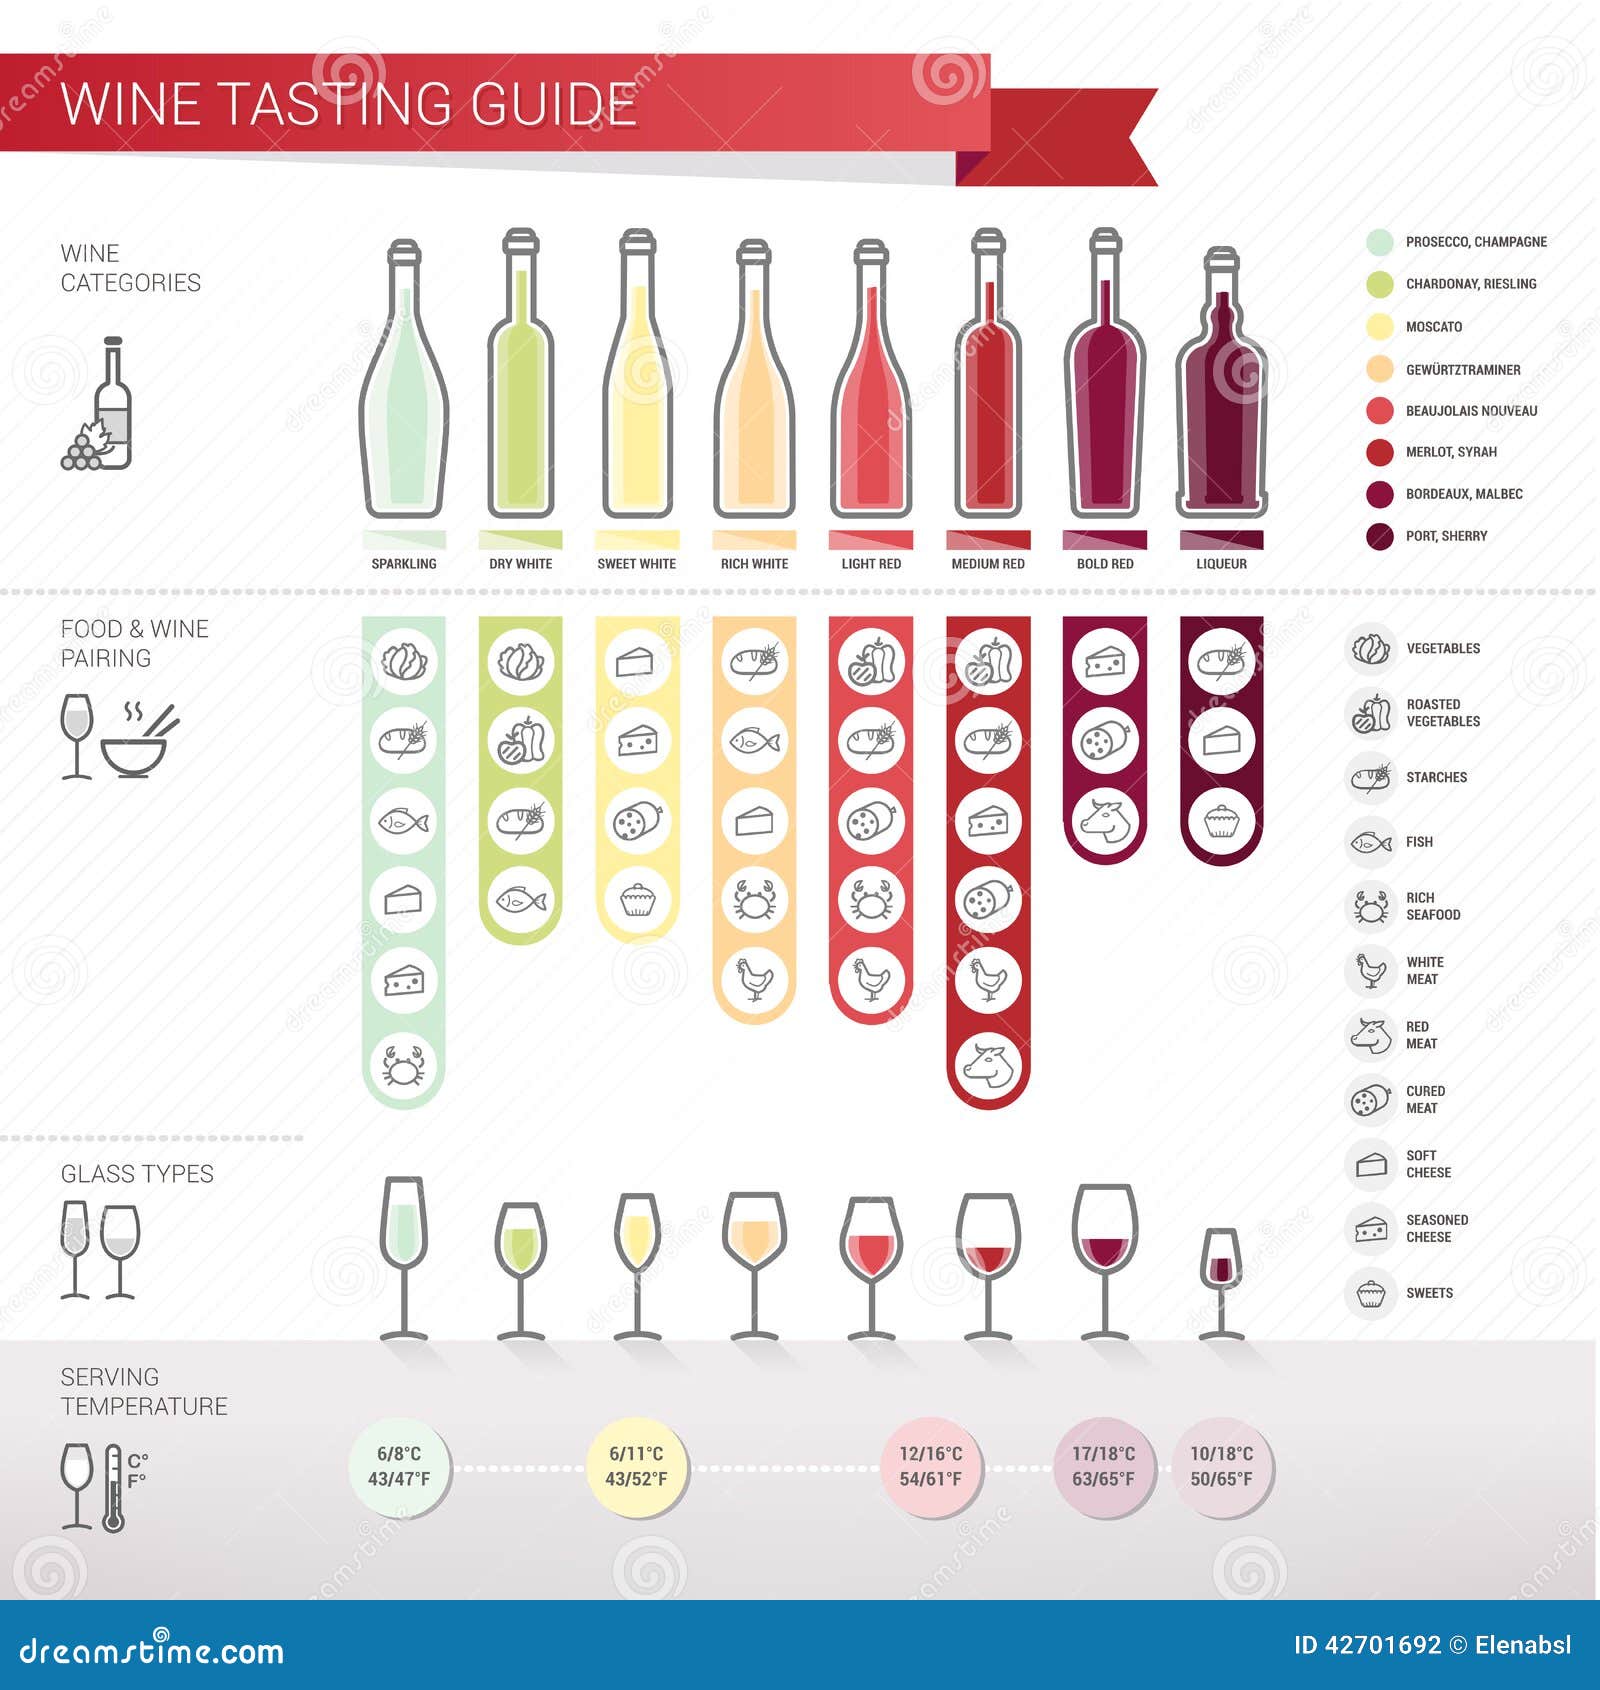 wine tasting guide